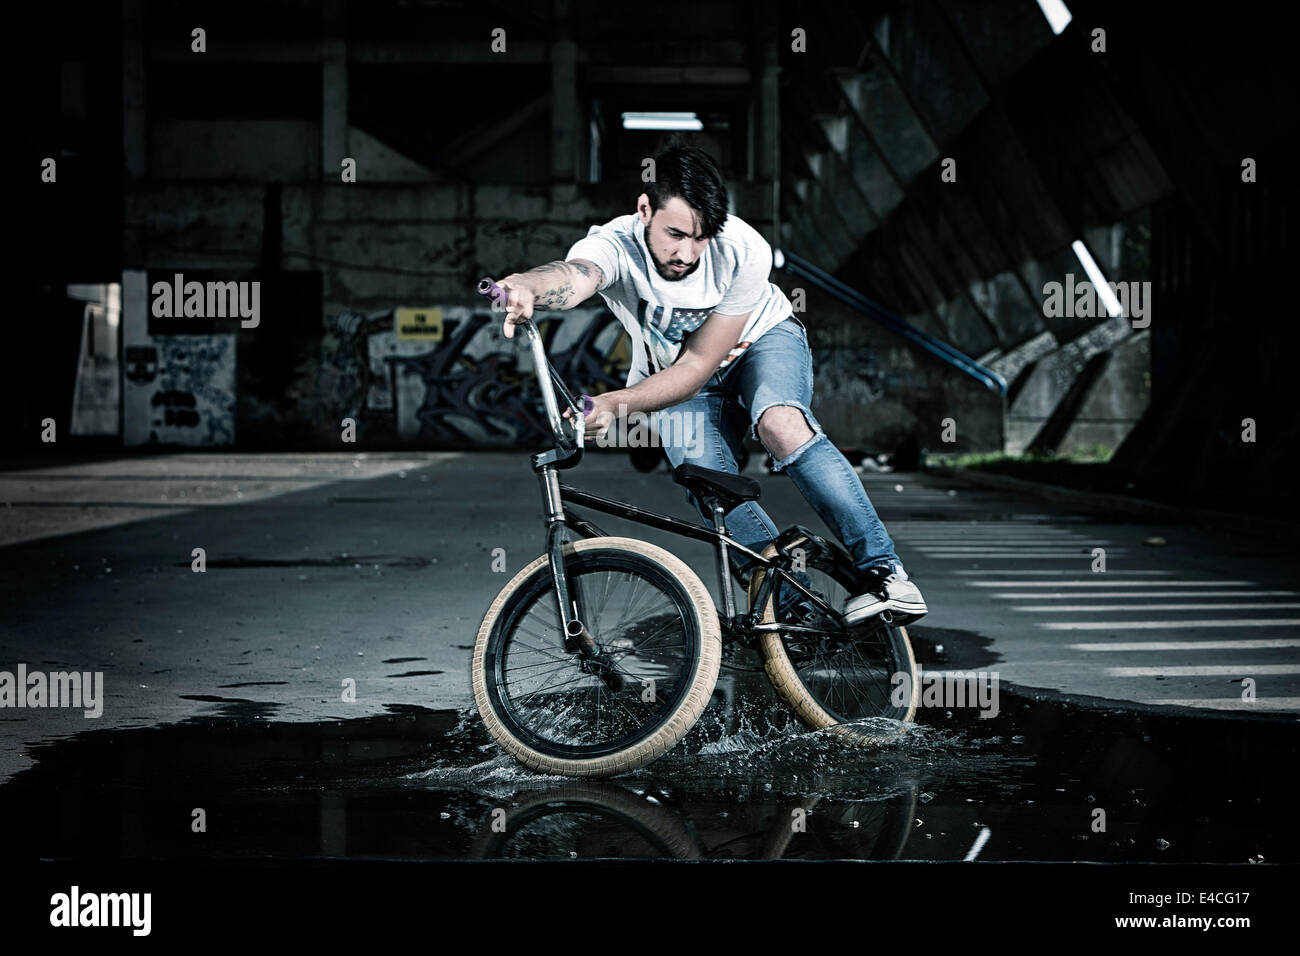 BMX-Biker einen Stunt auf einer Pfütze durchführen Stockfoto